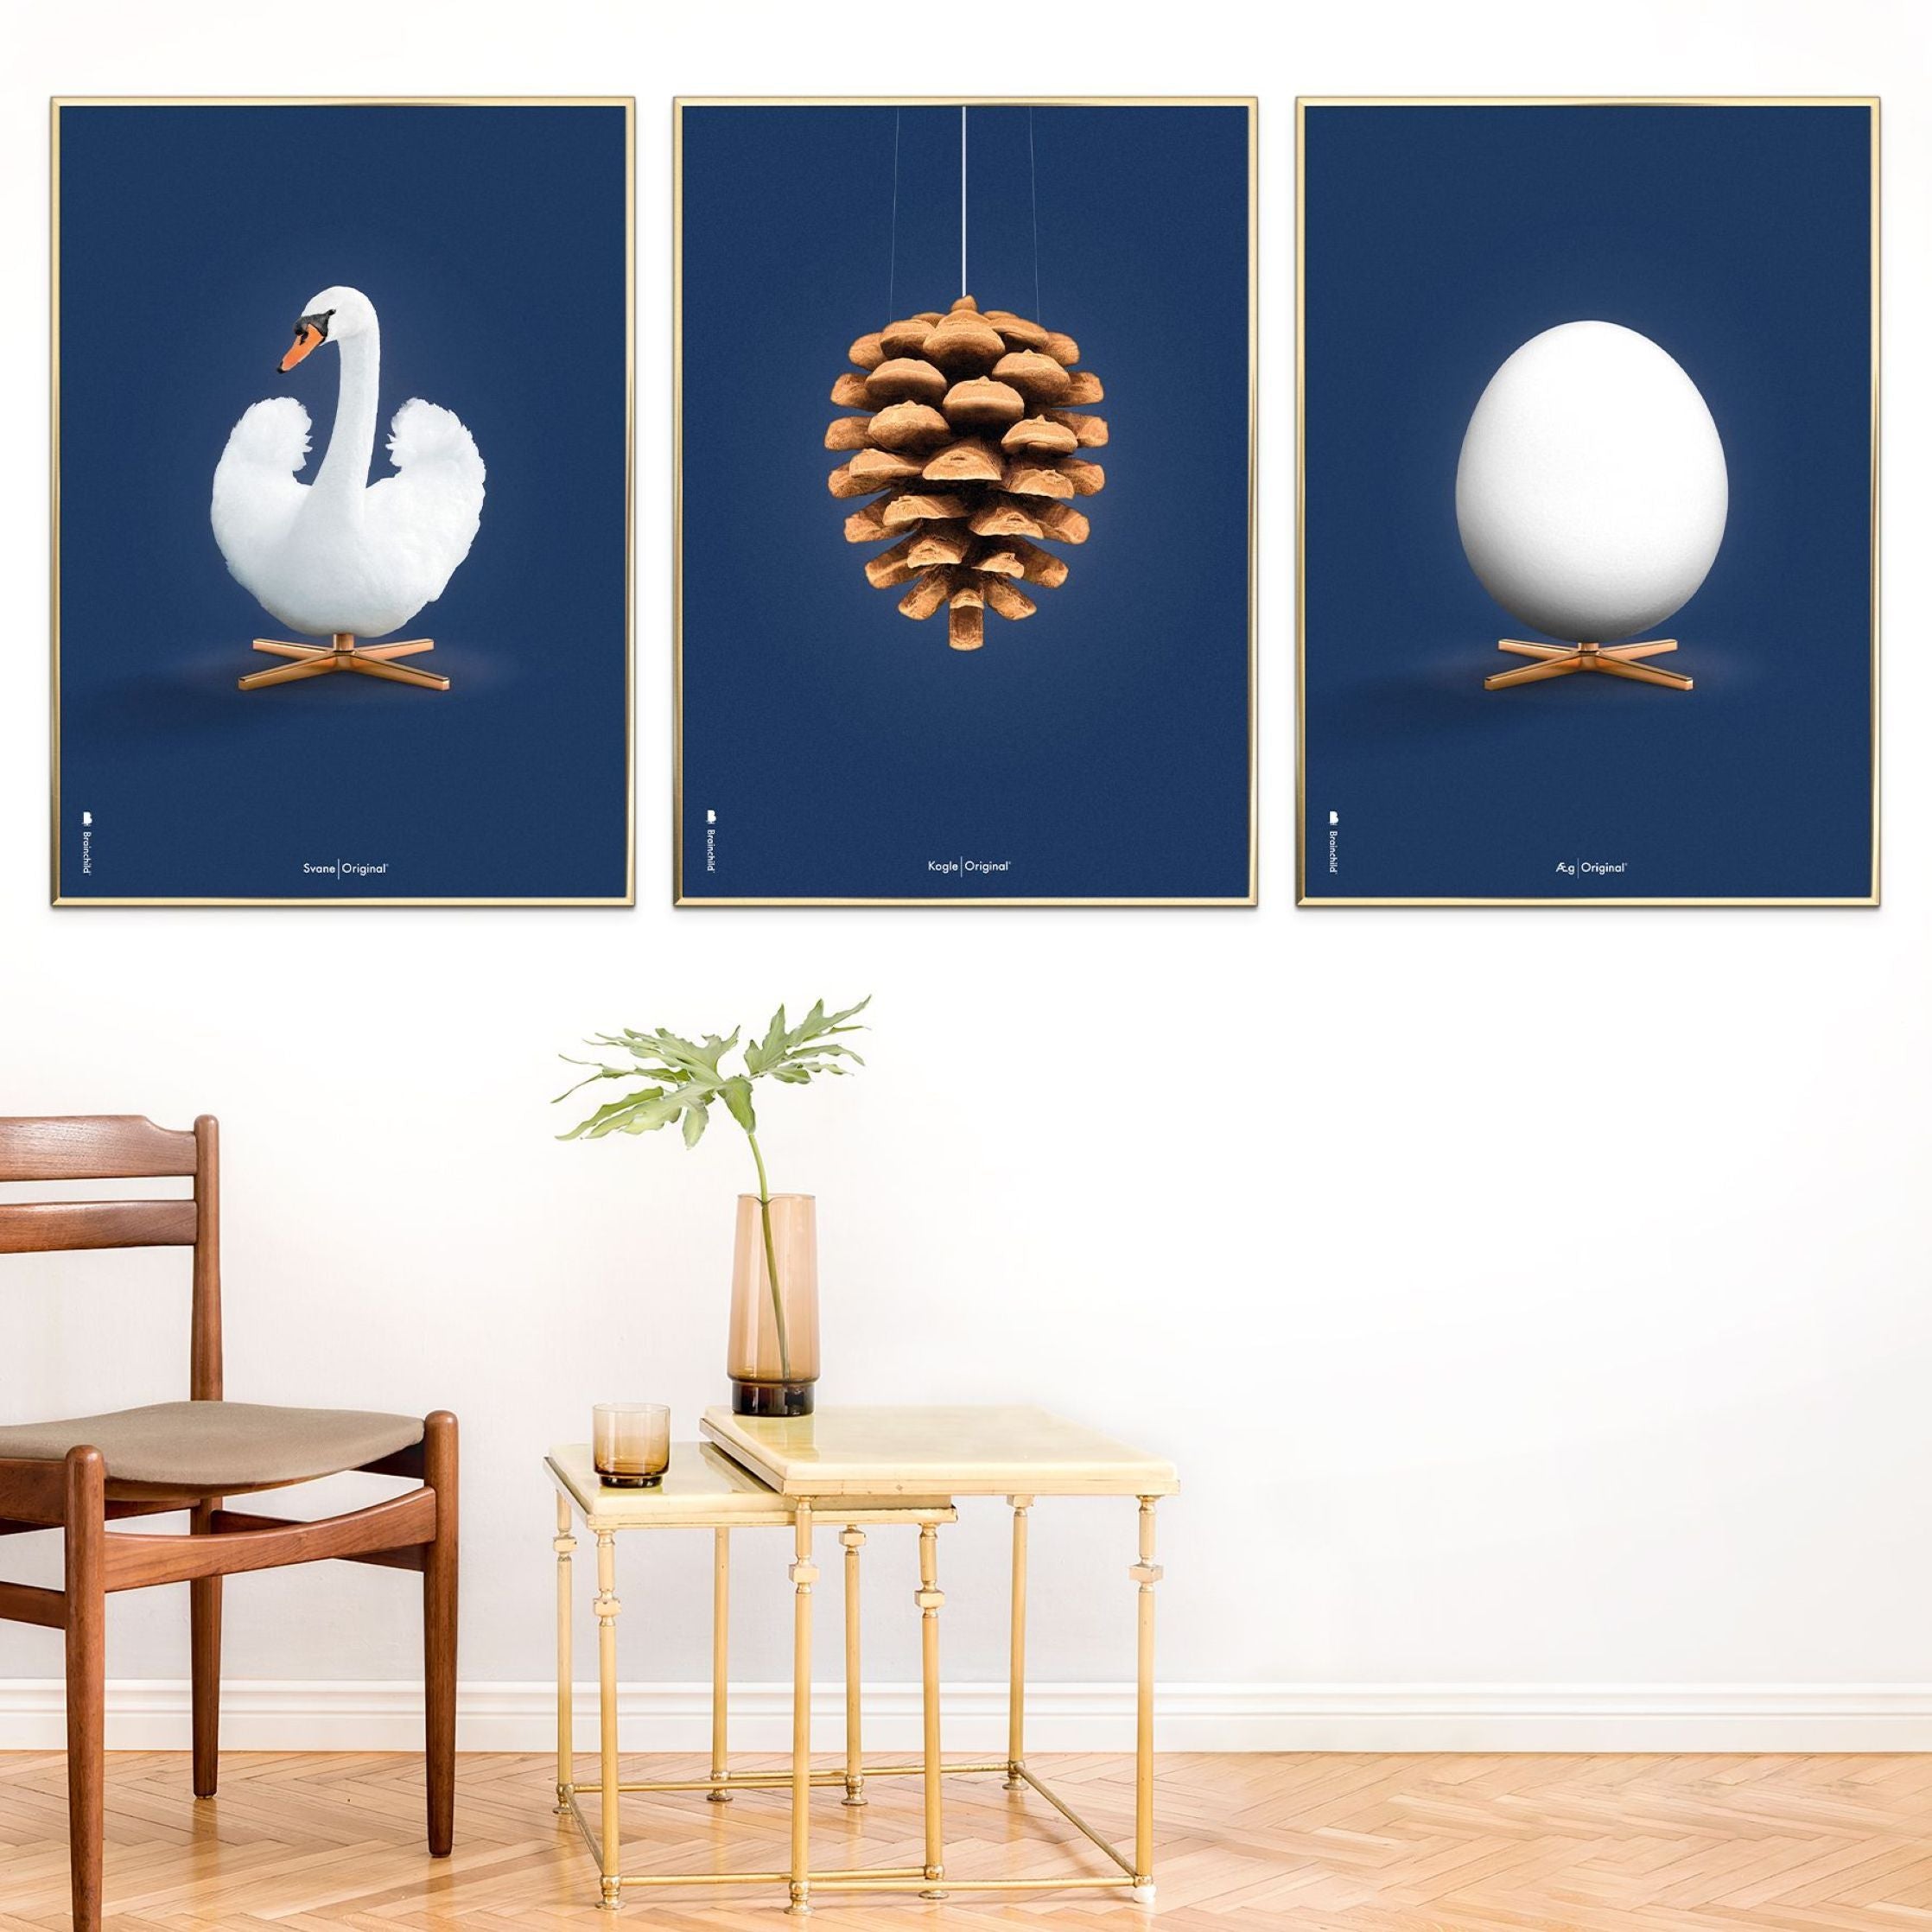 brainchild Affiche classique du cône en pin, cadre en bois clair 30x40 cm, fond bleu foncé